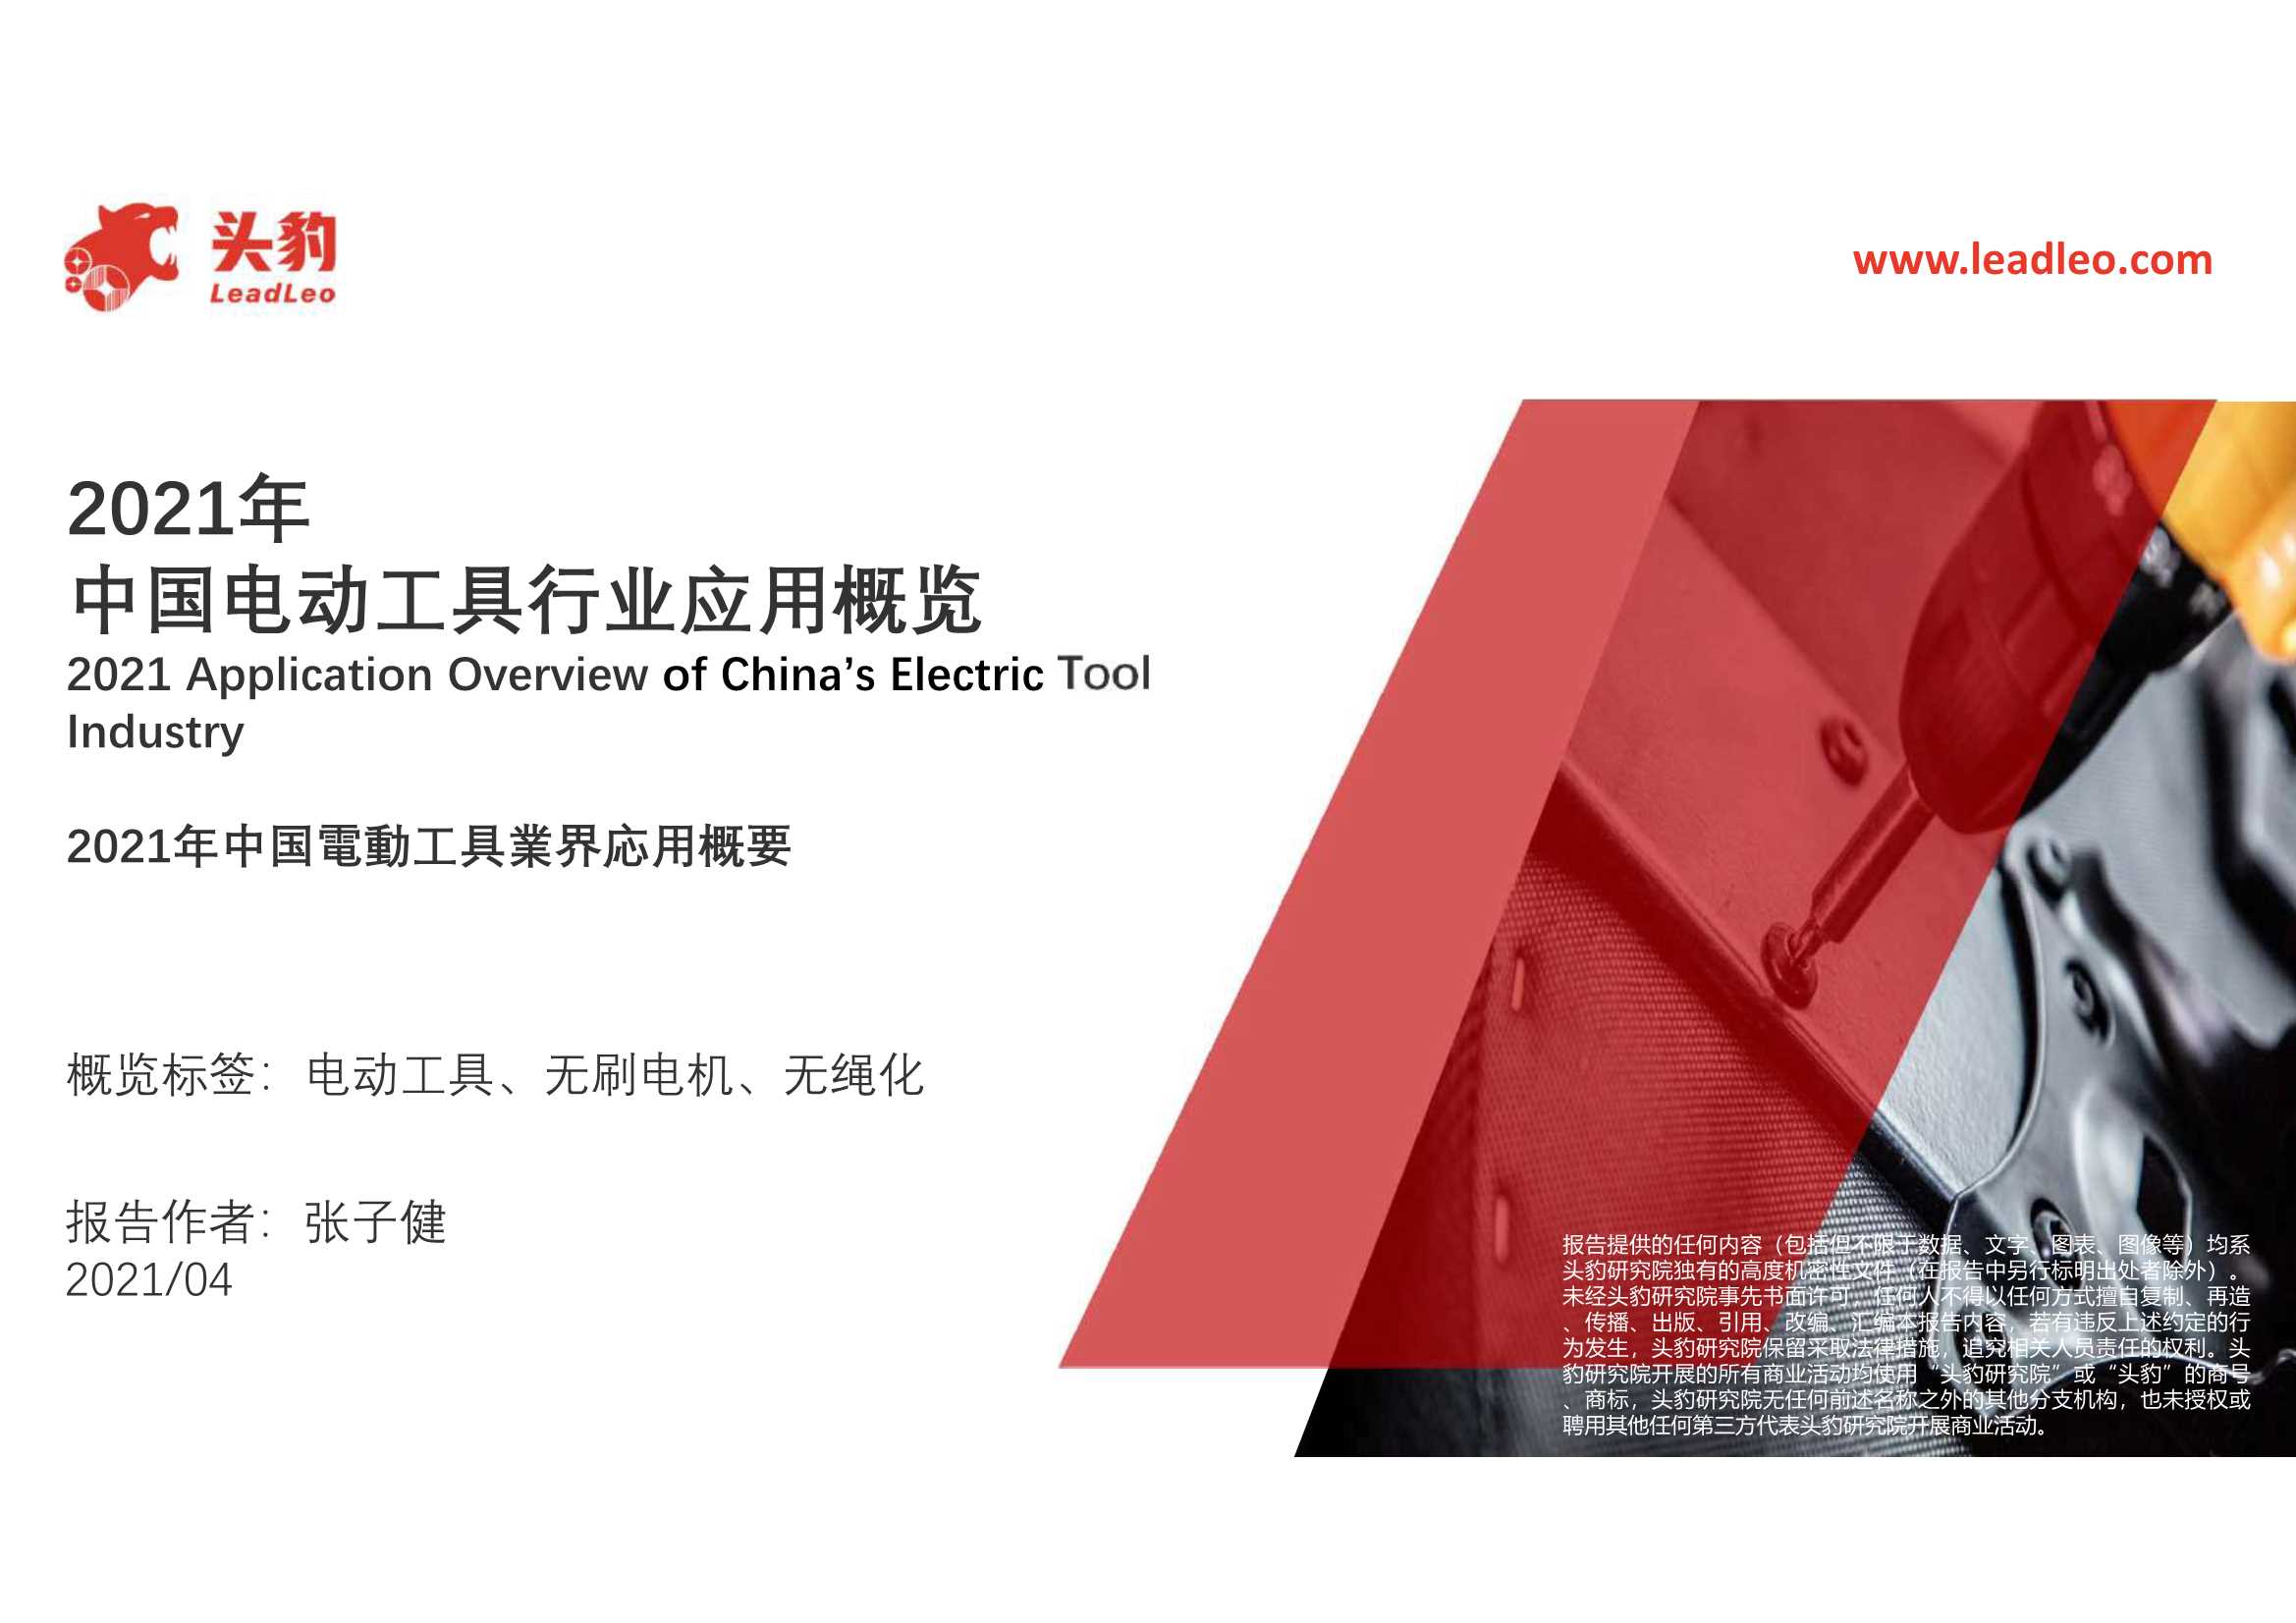 头豹研究院-2021年中国电动工具行业应用概览-2021.05-38页